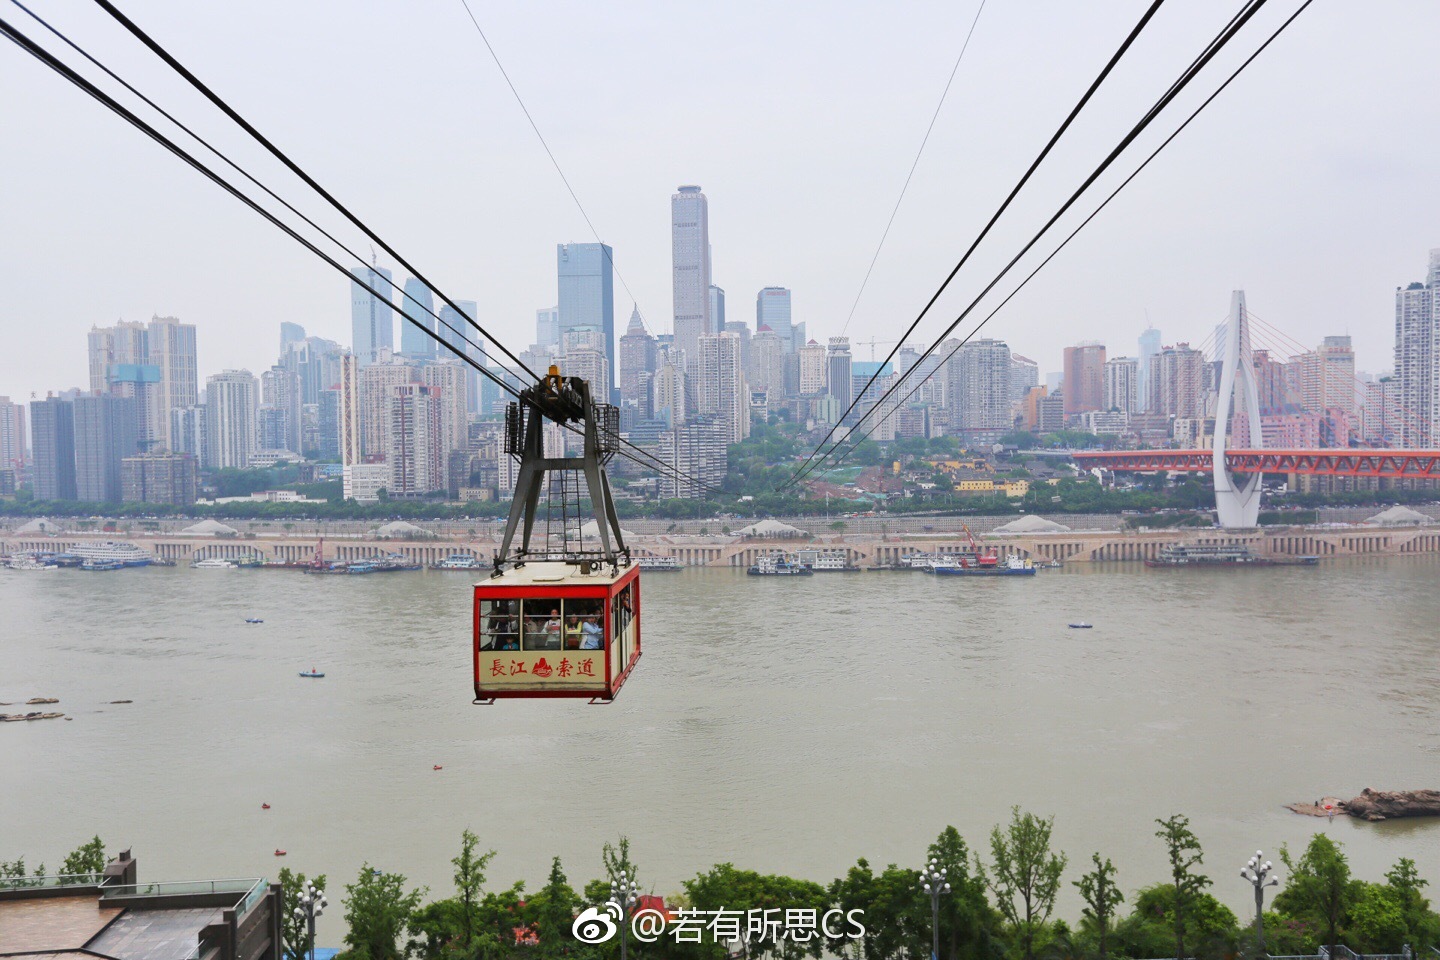 打卡了重庆长江索道,如今著名的网红景点